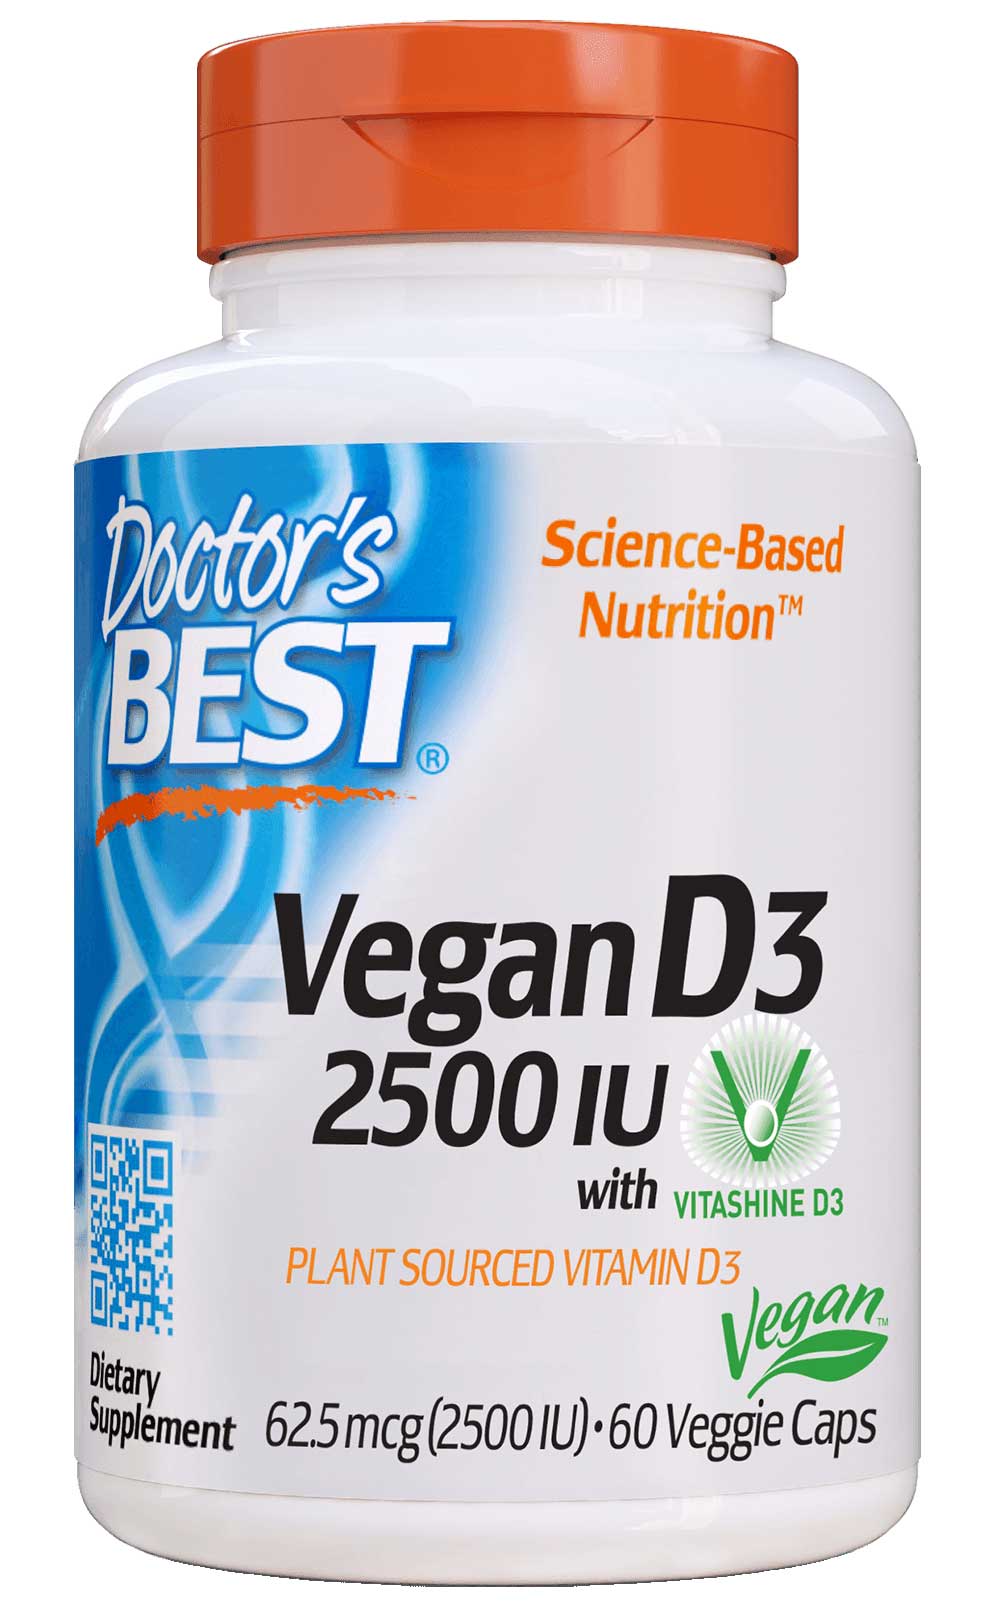 Doctor's Best Vegan D3 2500 IU